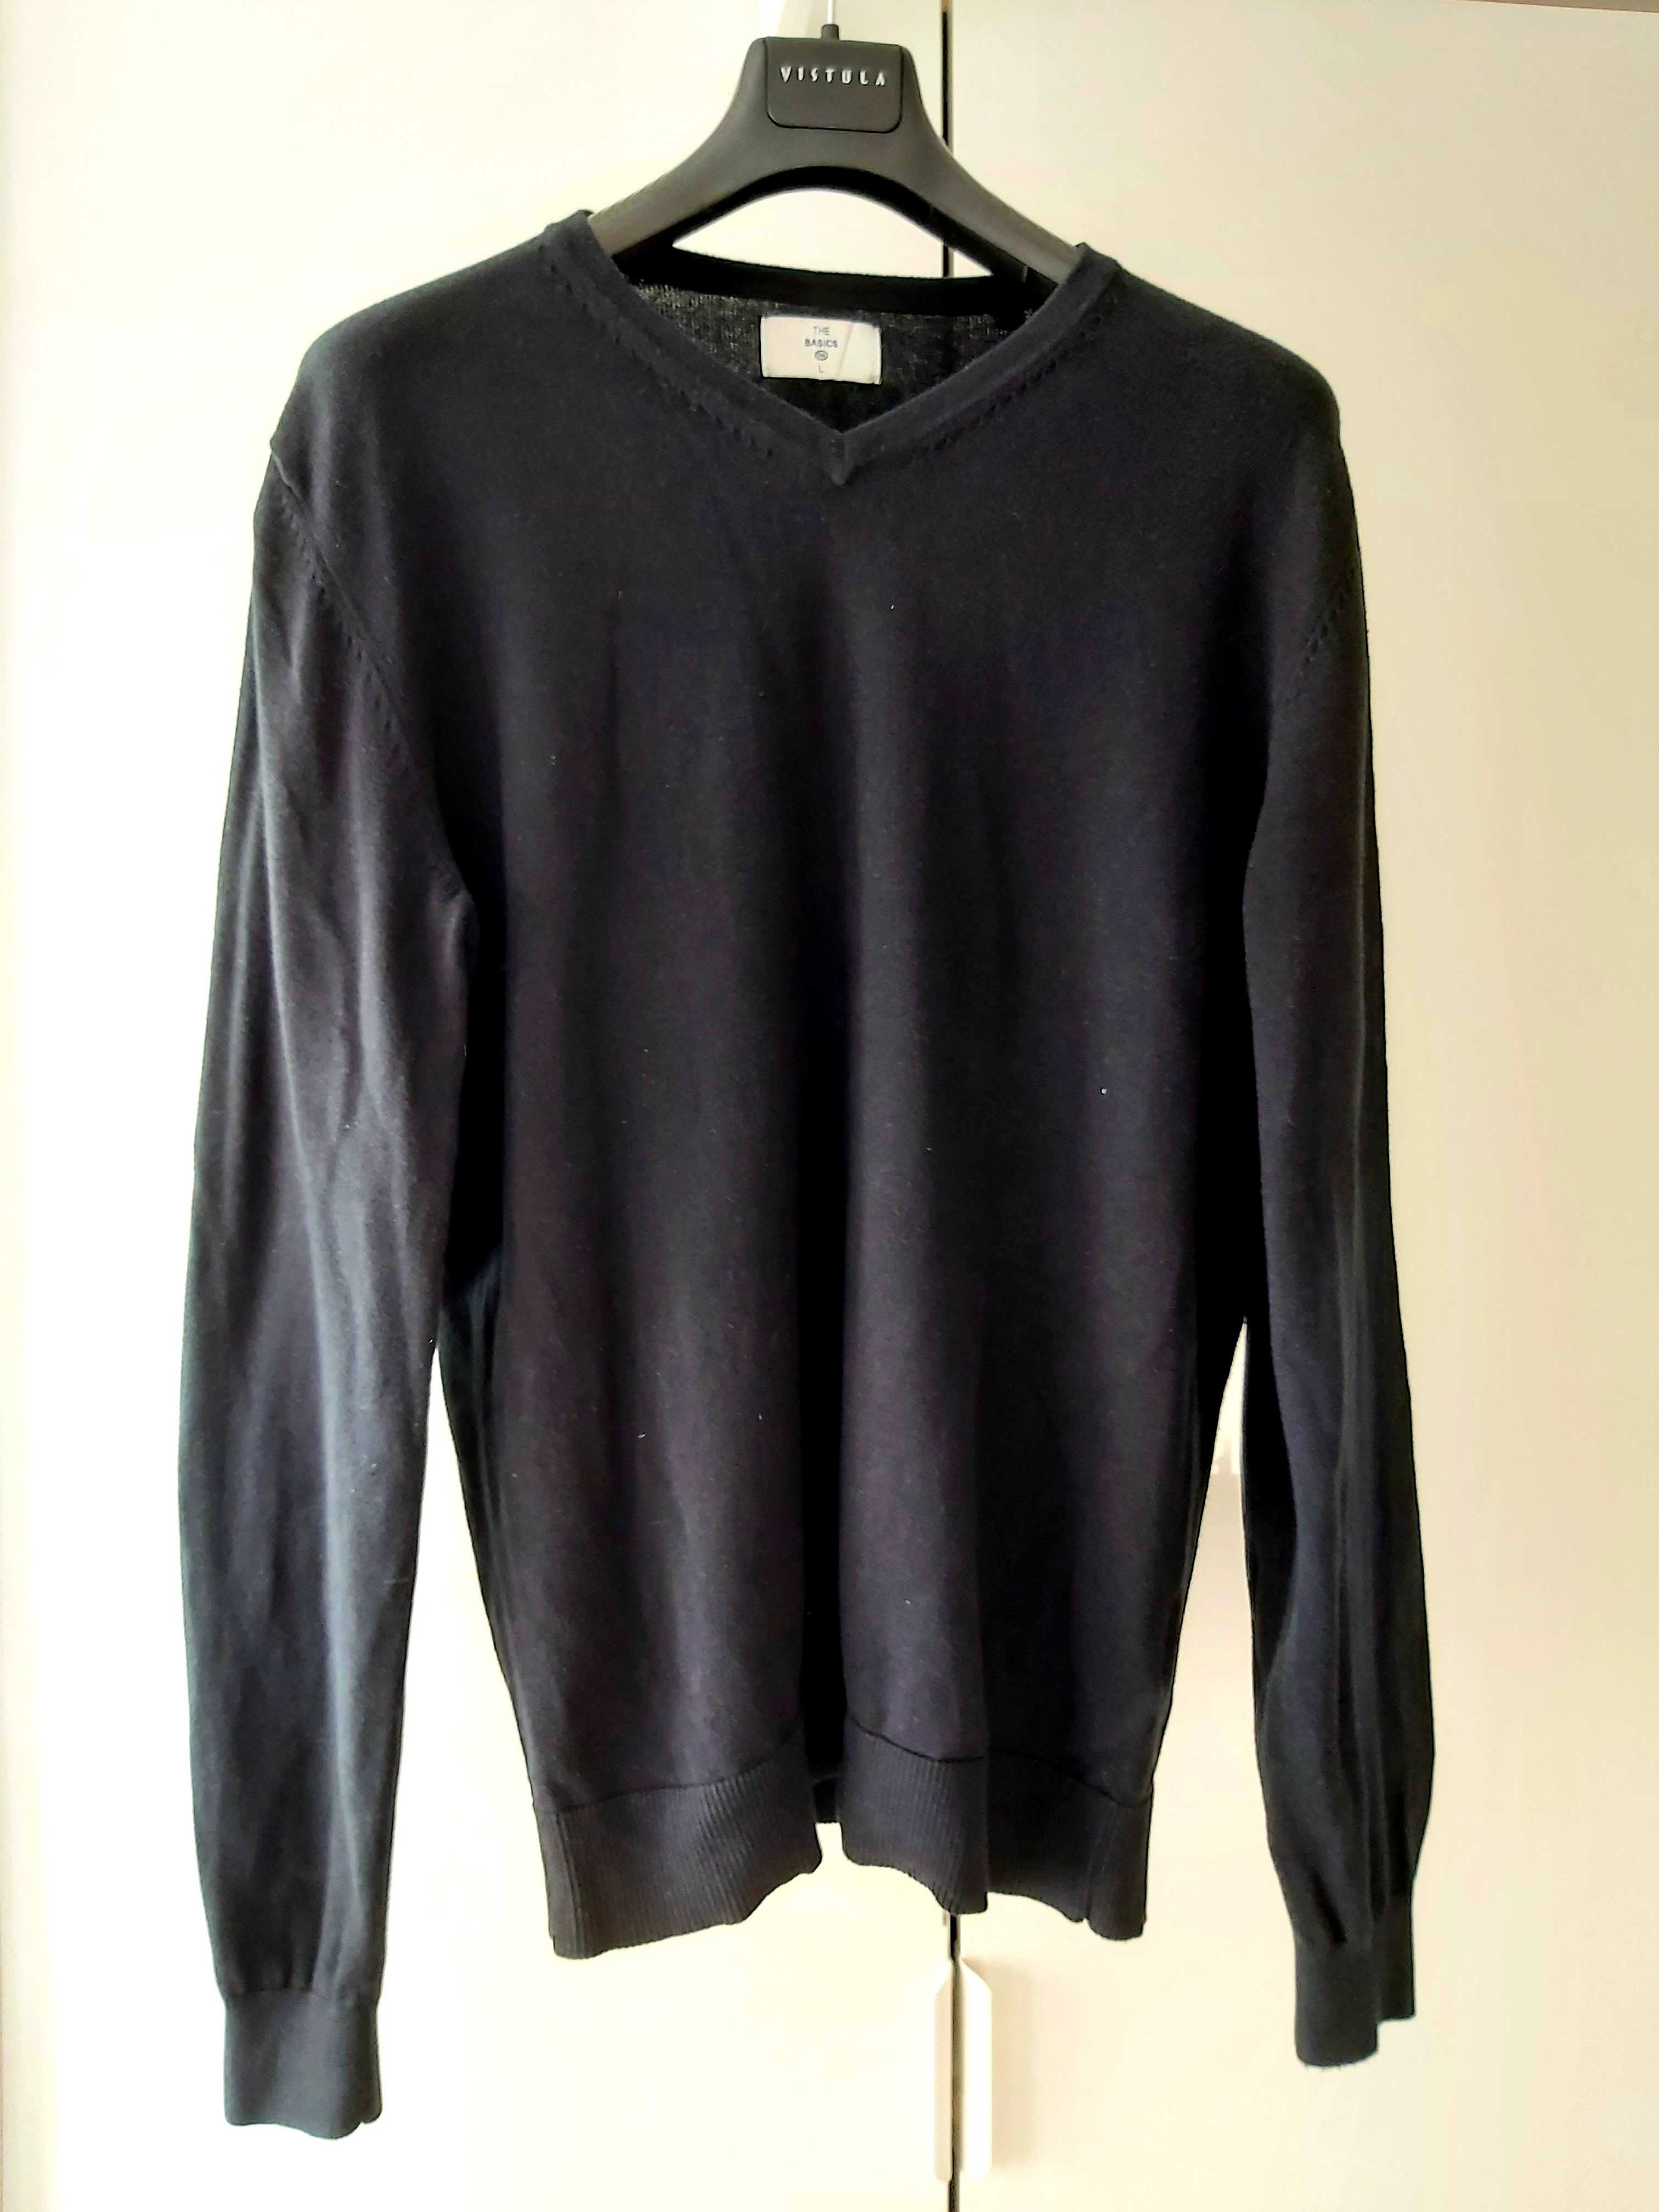 Sweter męski, czarny, rozmiar L, C&A.